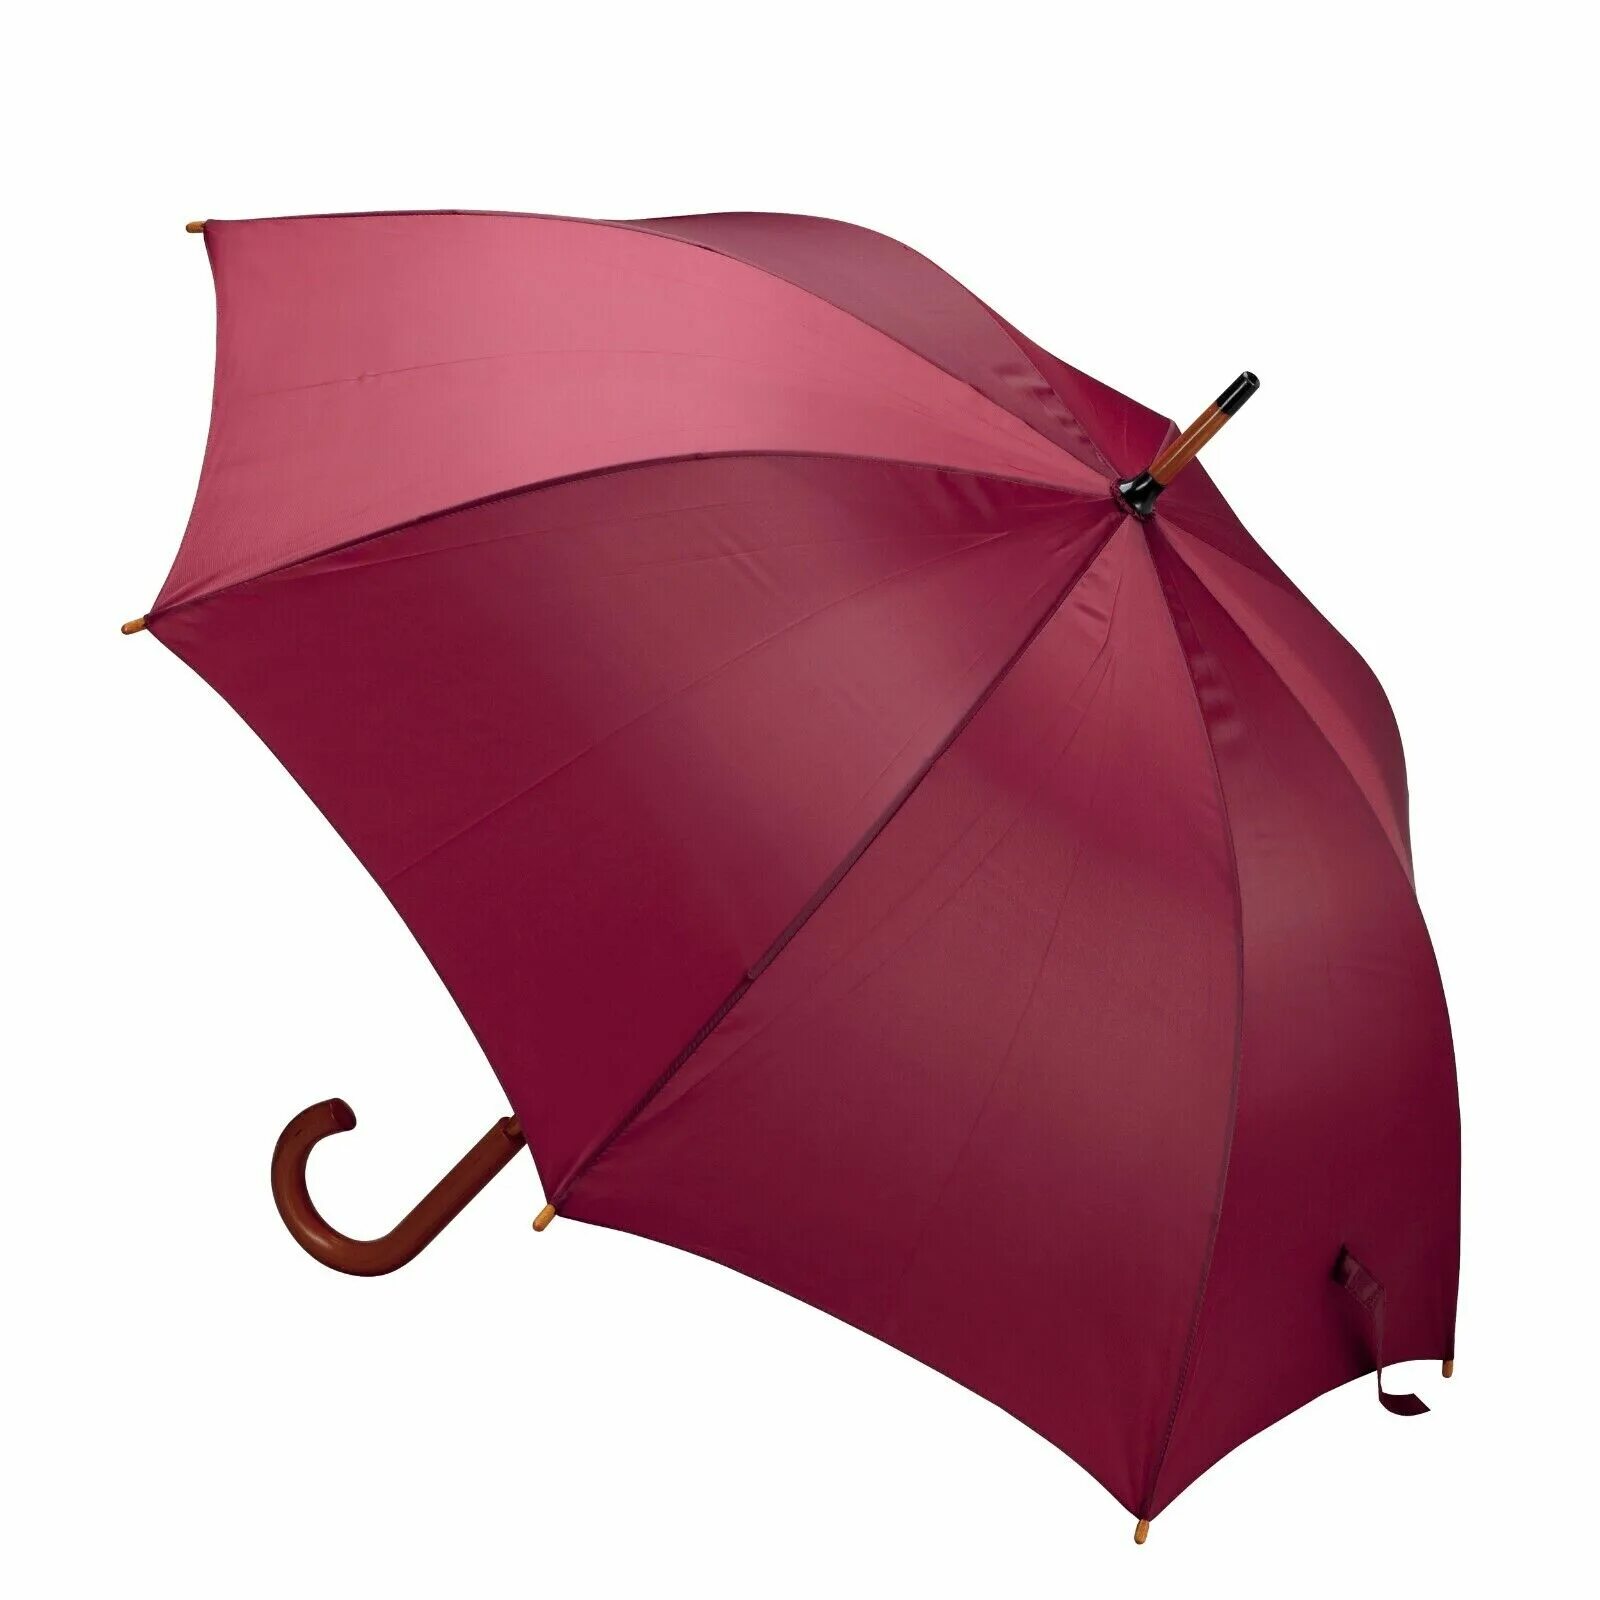 I need umbrella. "Style Umbrella" зонт женский. Фирма Esprit зонт трость. "Style Umbrella" зонт женский автомат. Зонт трость бордовый.